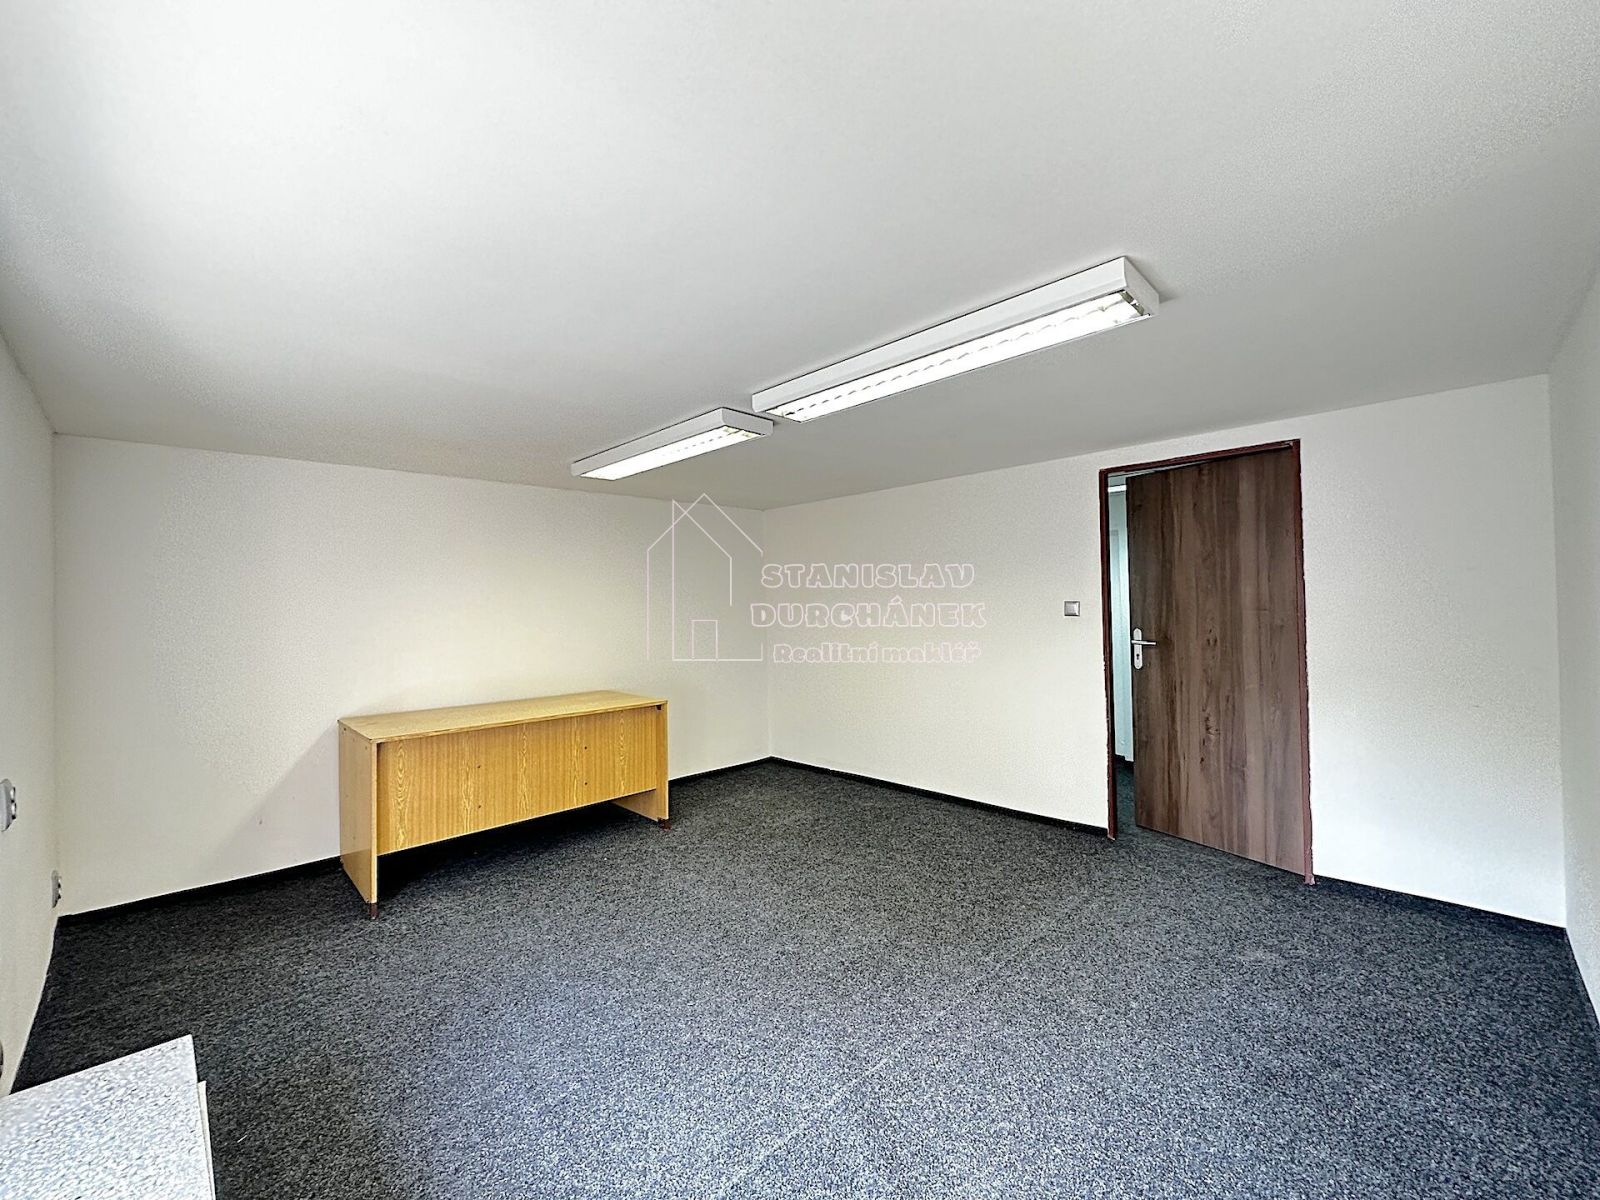 Pronájem kanceláře 16,3 m2, Praha 8-Karlín, ul. Thámova, 2 min od metra Křižíkova, obrázek č. 2